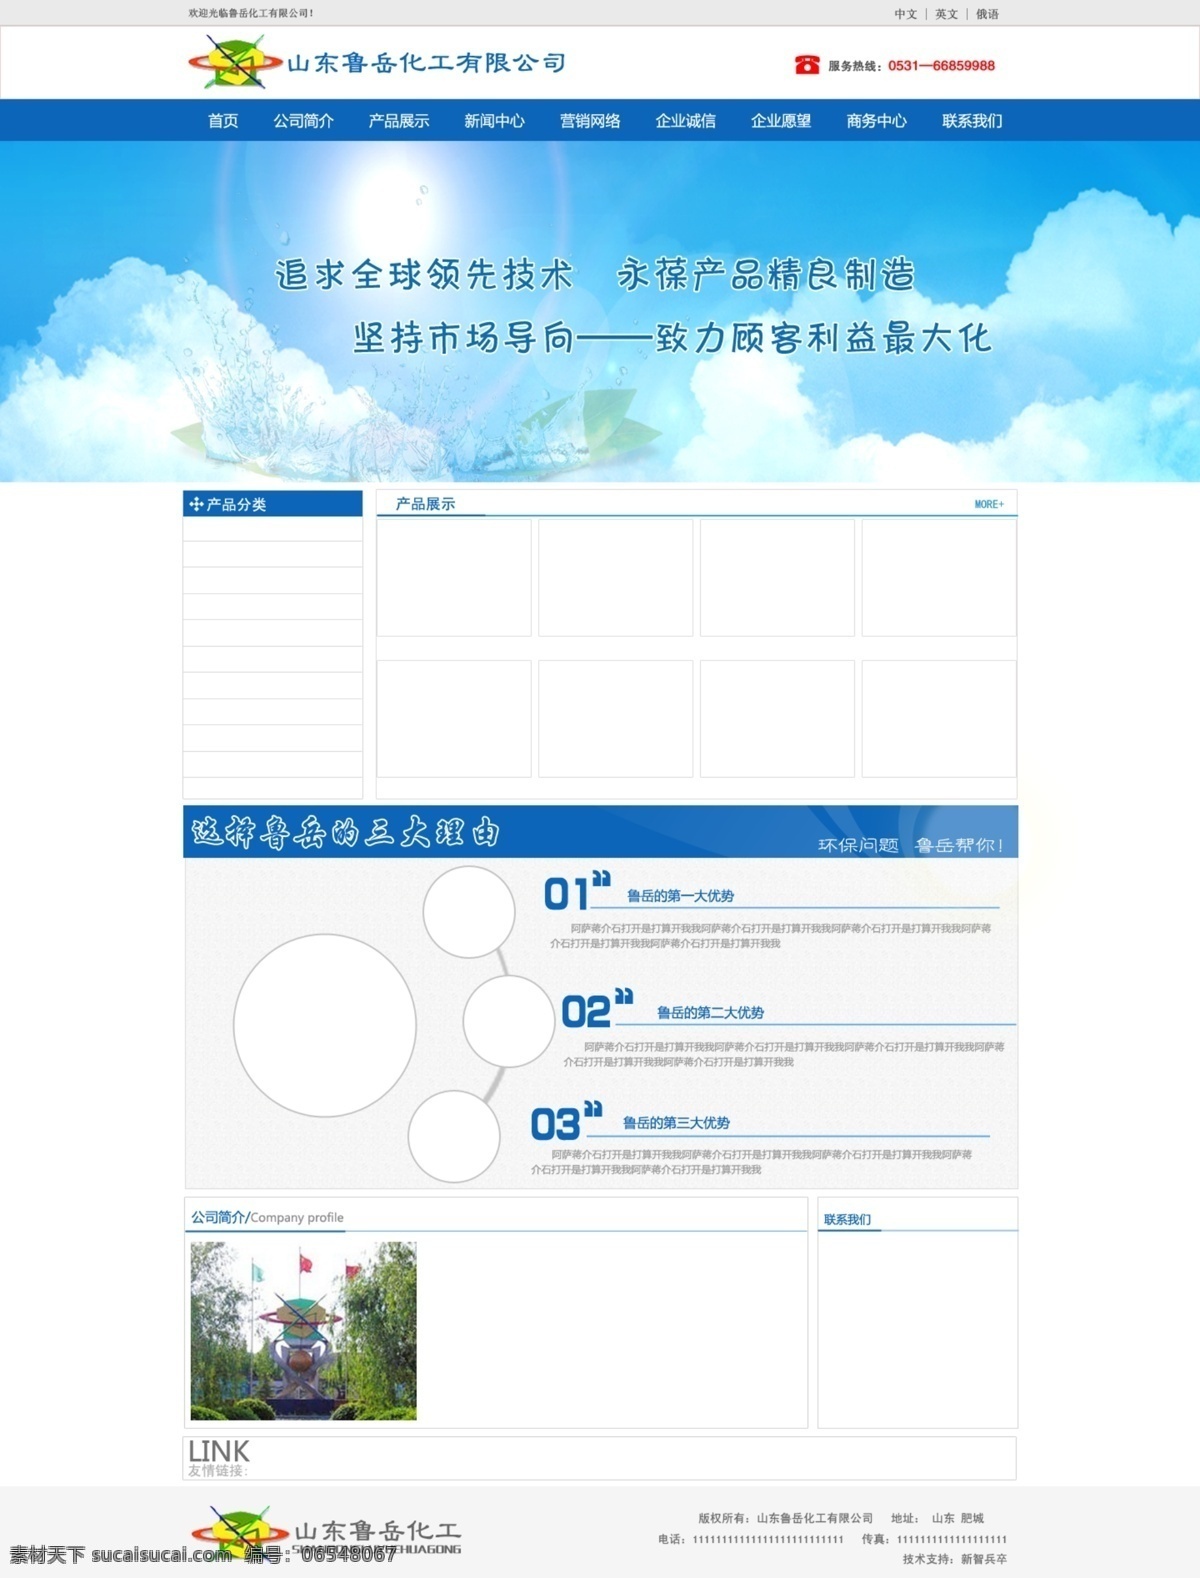 原创 化工 网站设计 化工网站设计 蓝色 水处理 banner 图 蓝天 白云 白色